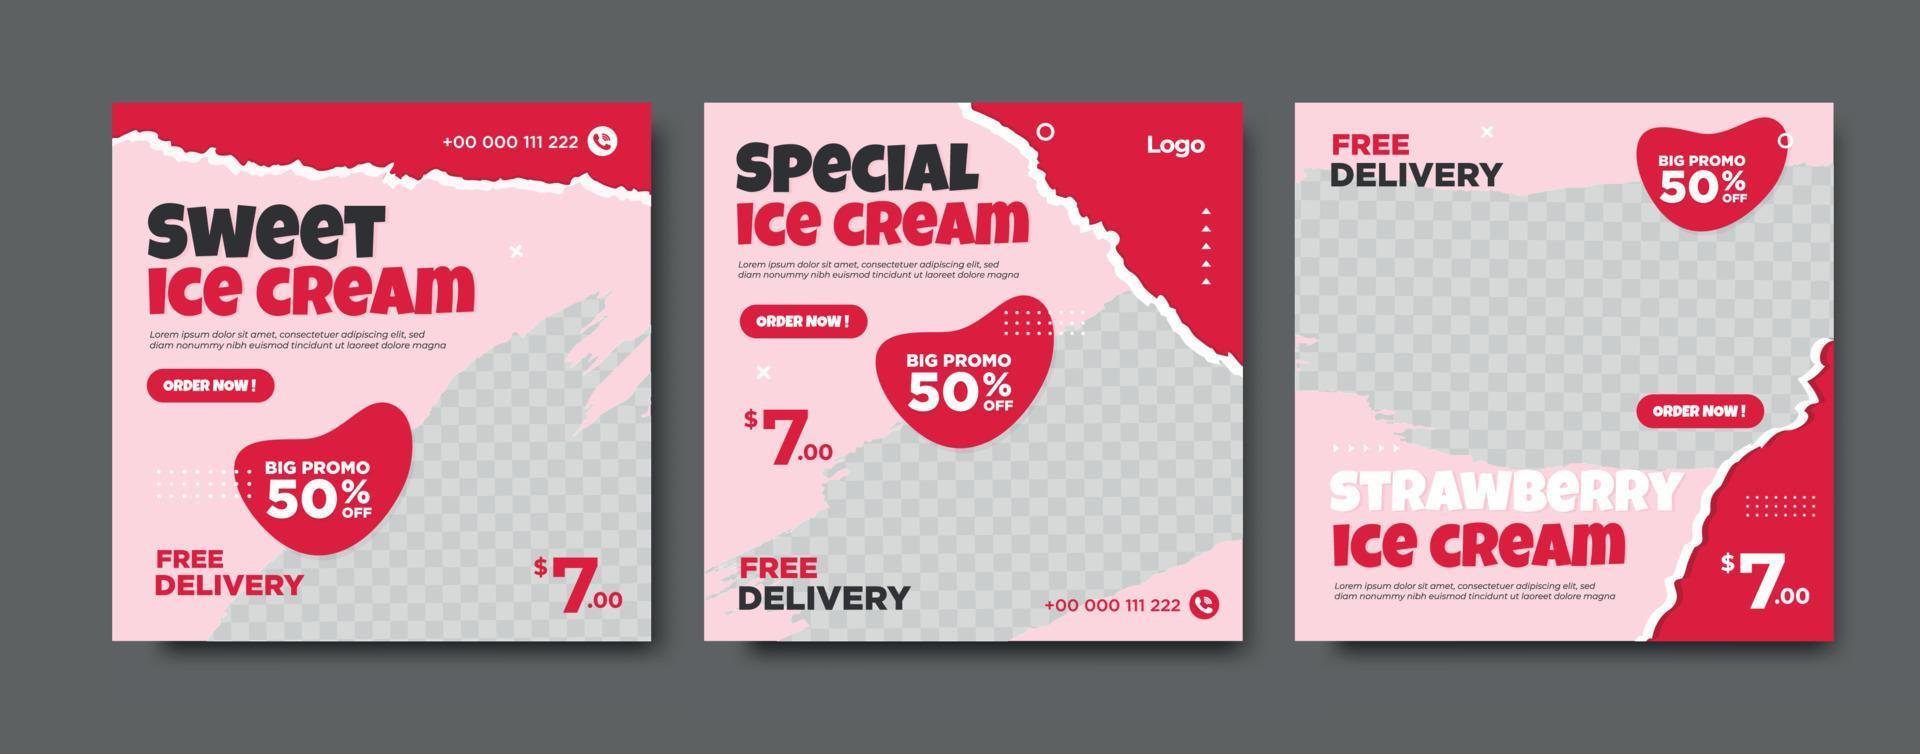 Special delicious ice cream social media post vector